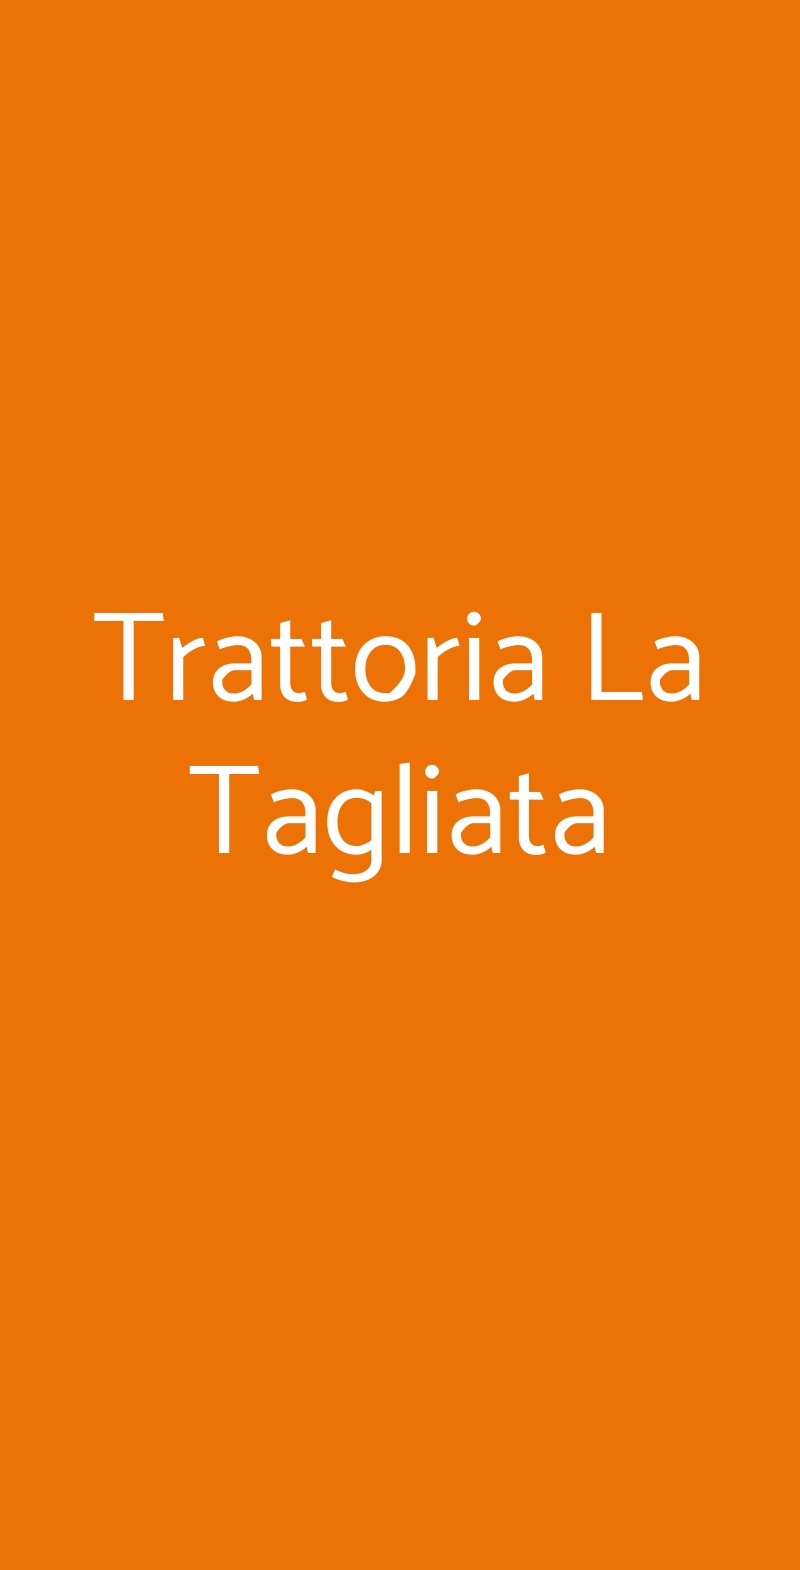 Trattoria La Tagliata Bologna menù 1 pagina